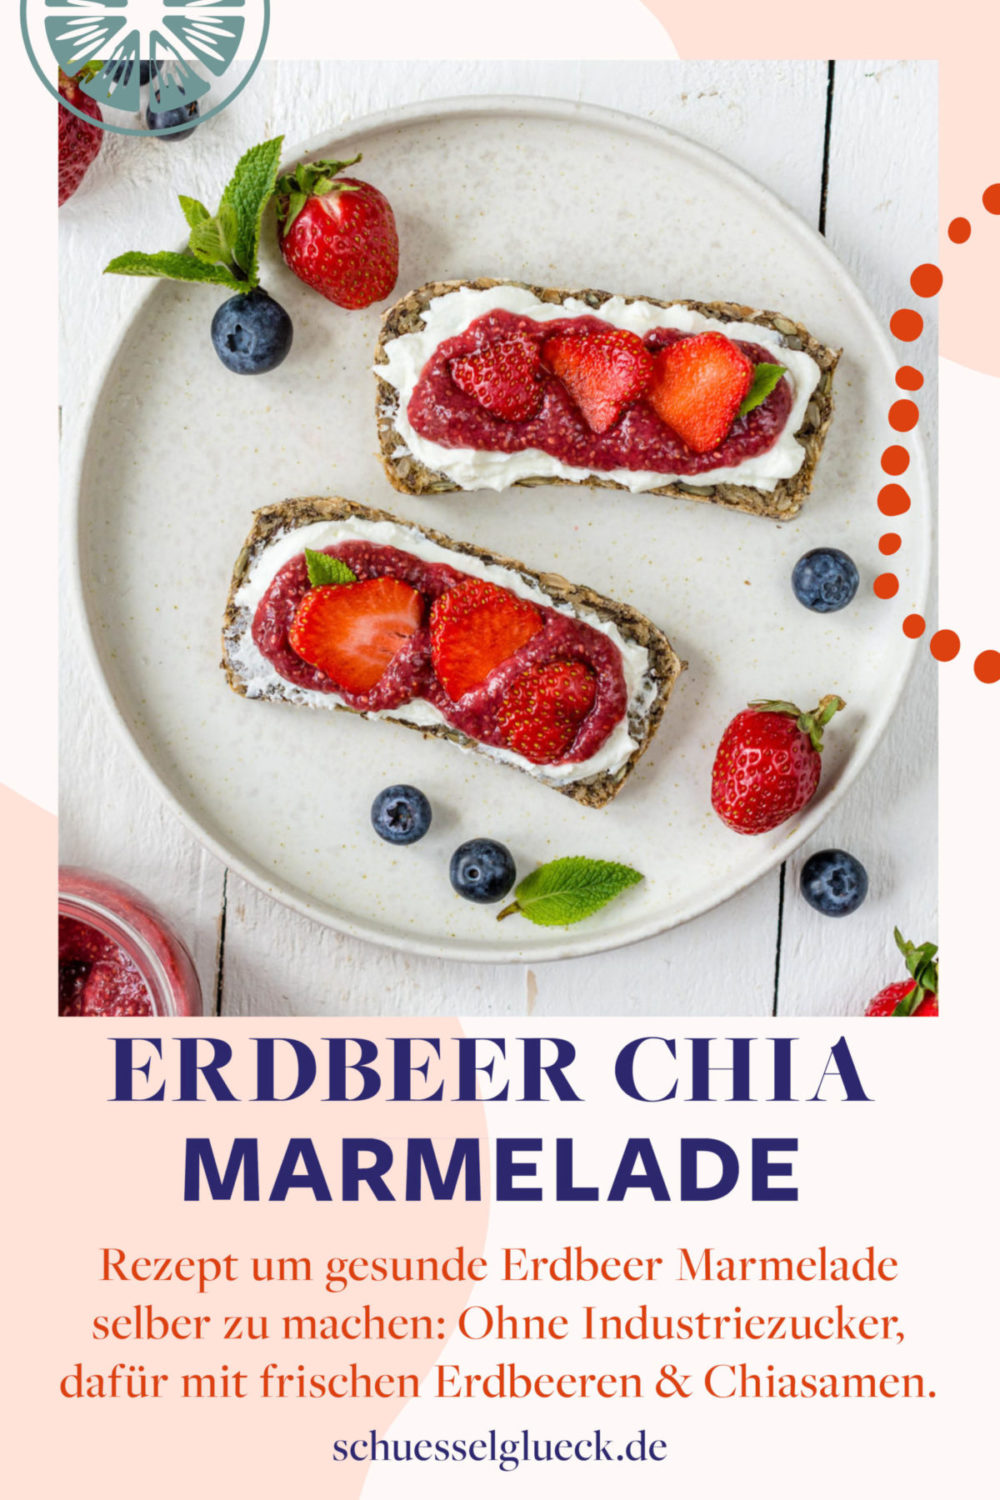 Erdbeer-Chia-Marmelade ohne Zucker in 5 Minuten selber machen